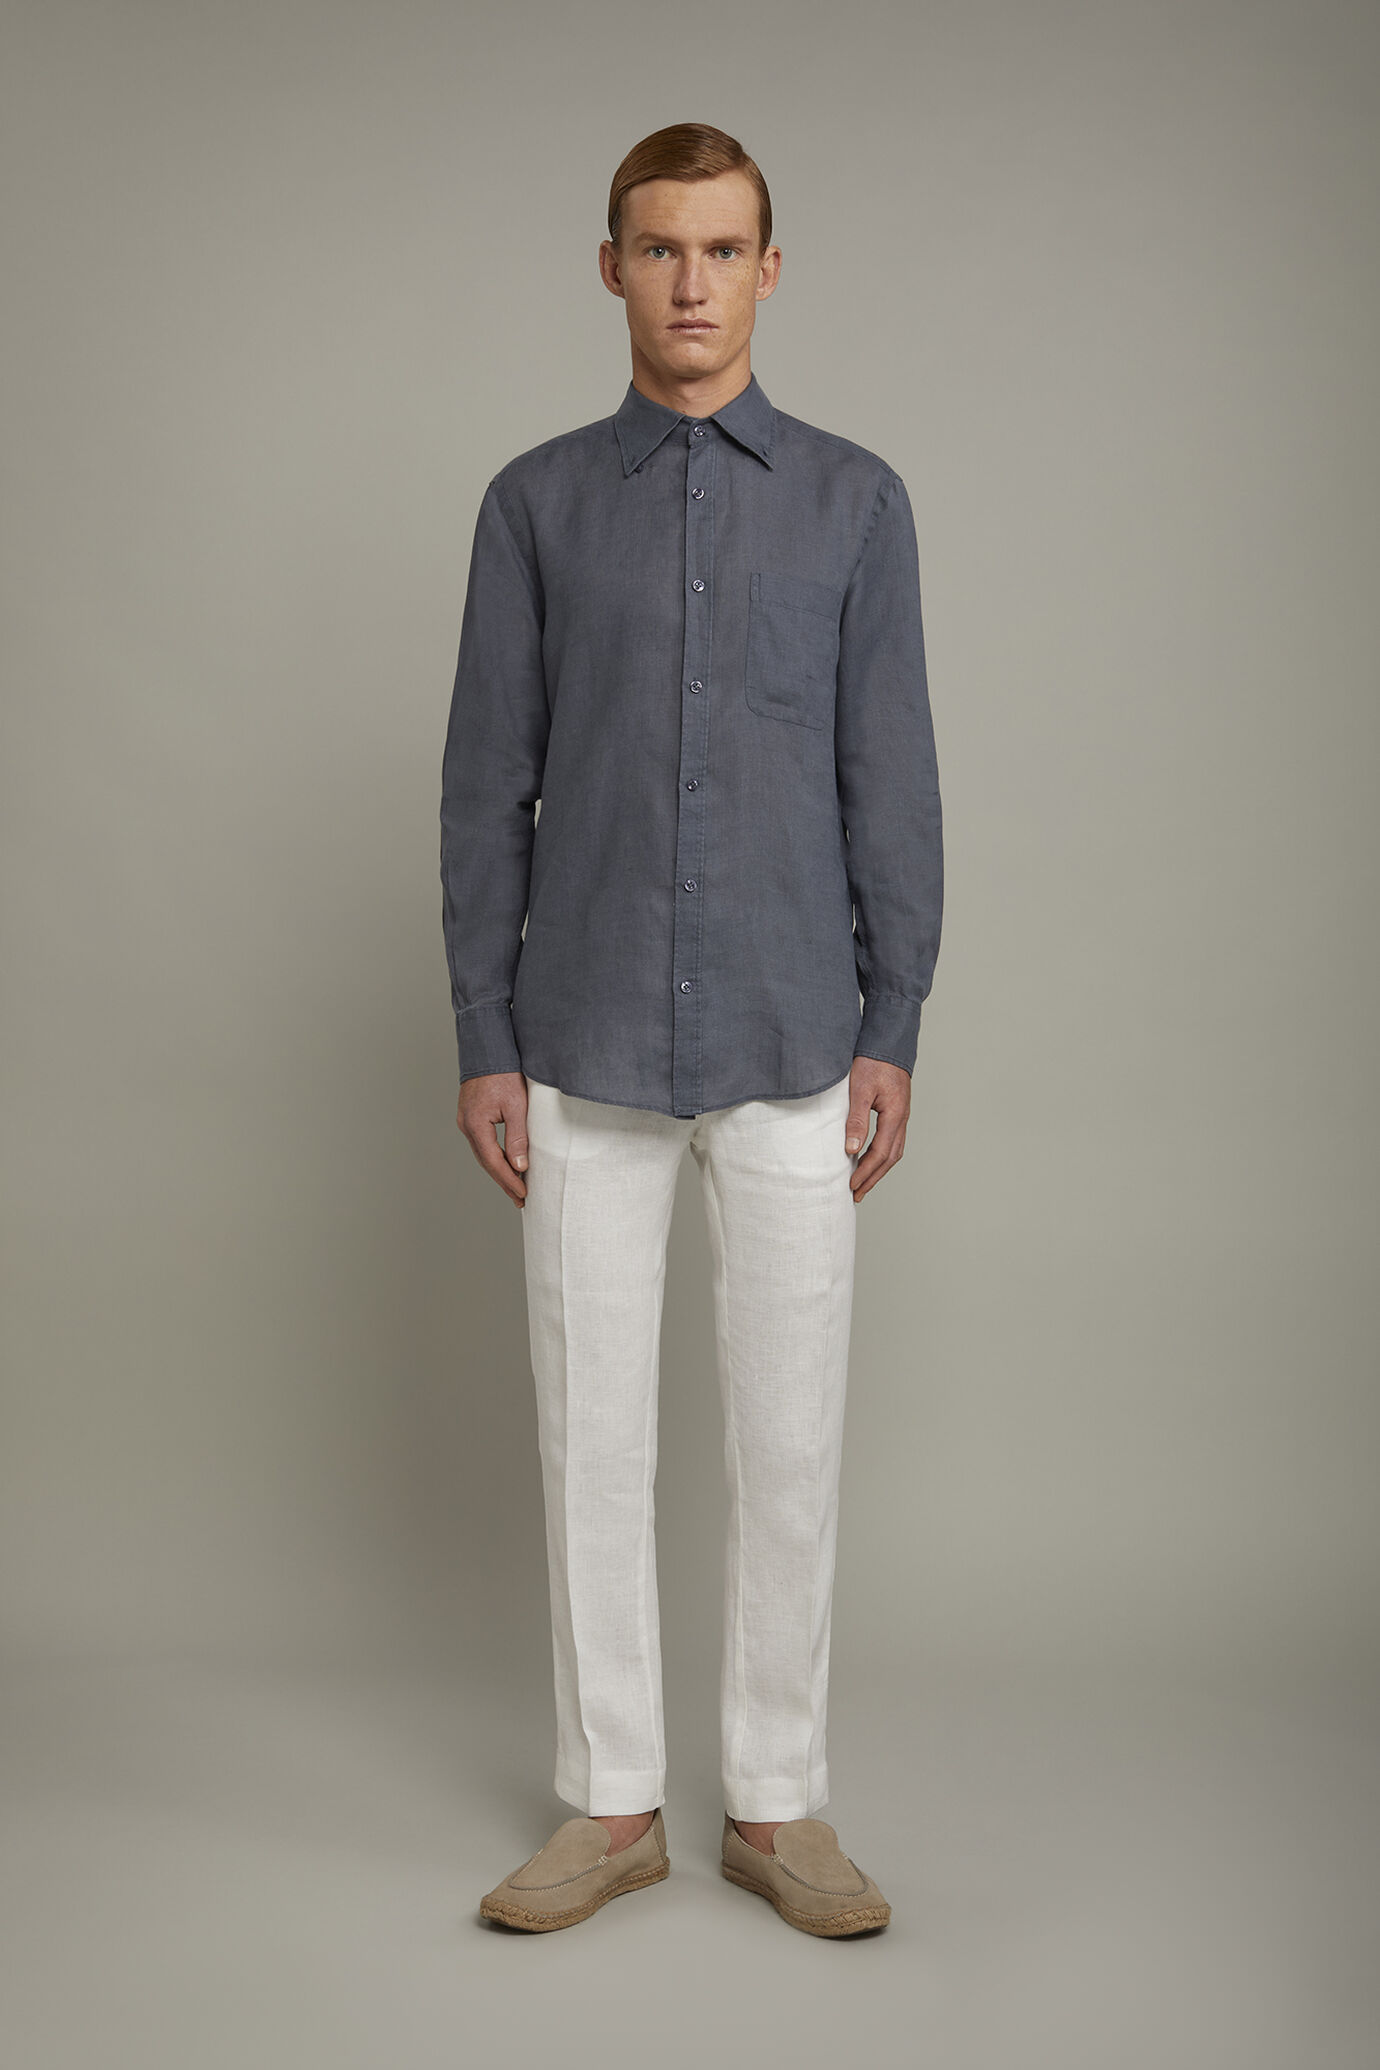 Pantalone chino 100% lino regular fit image number 2